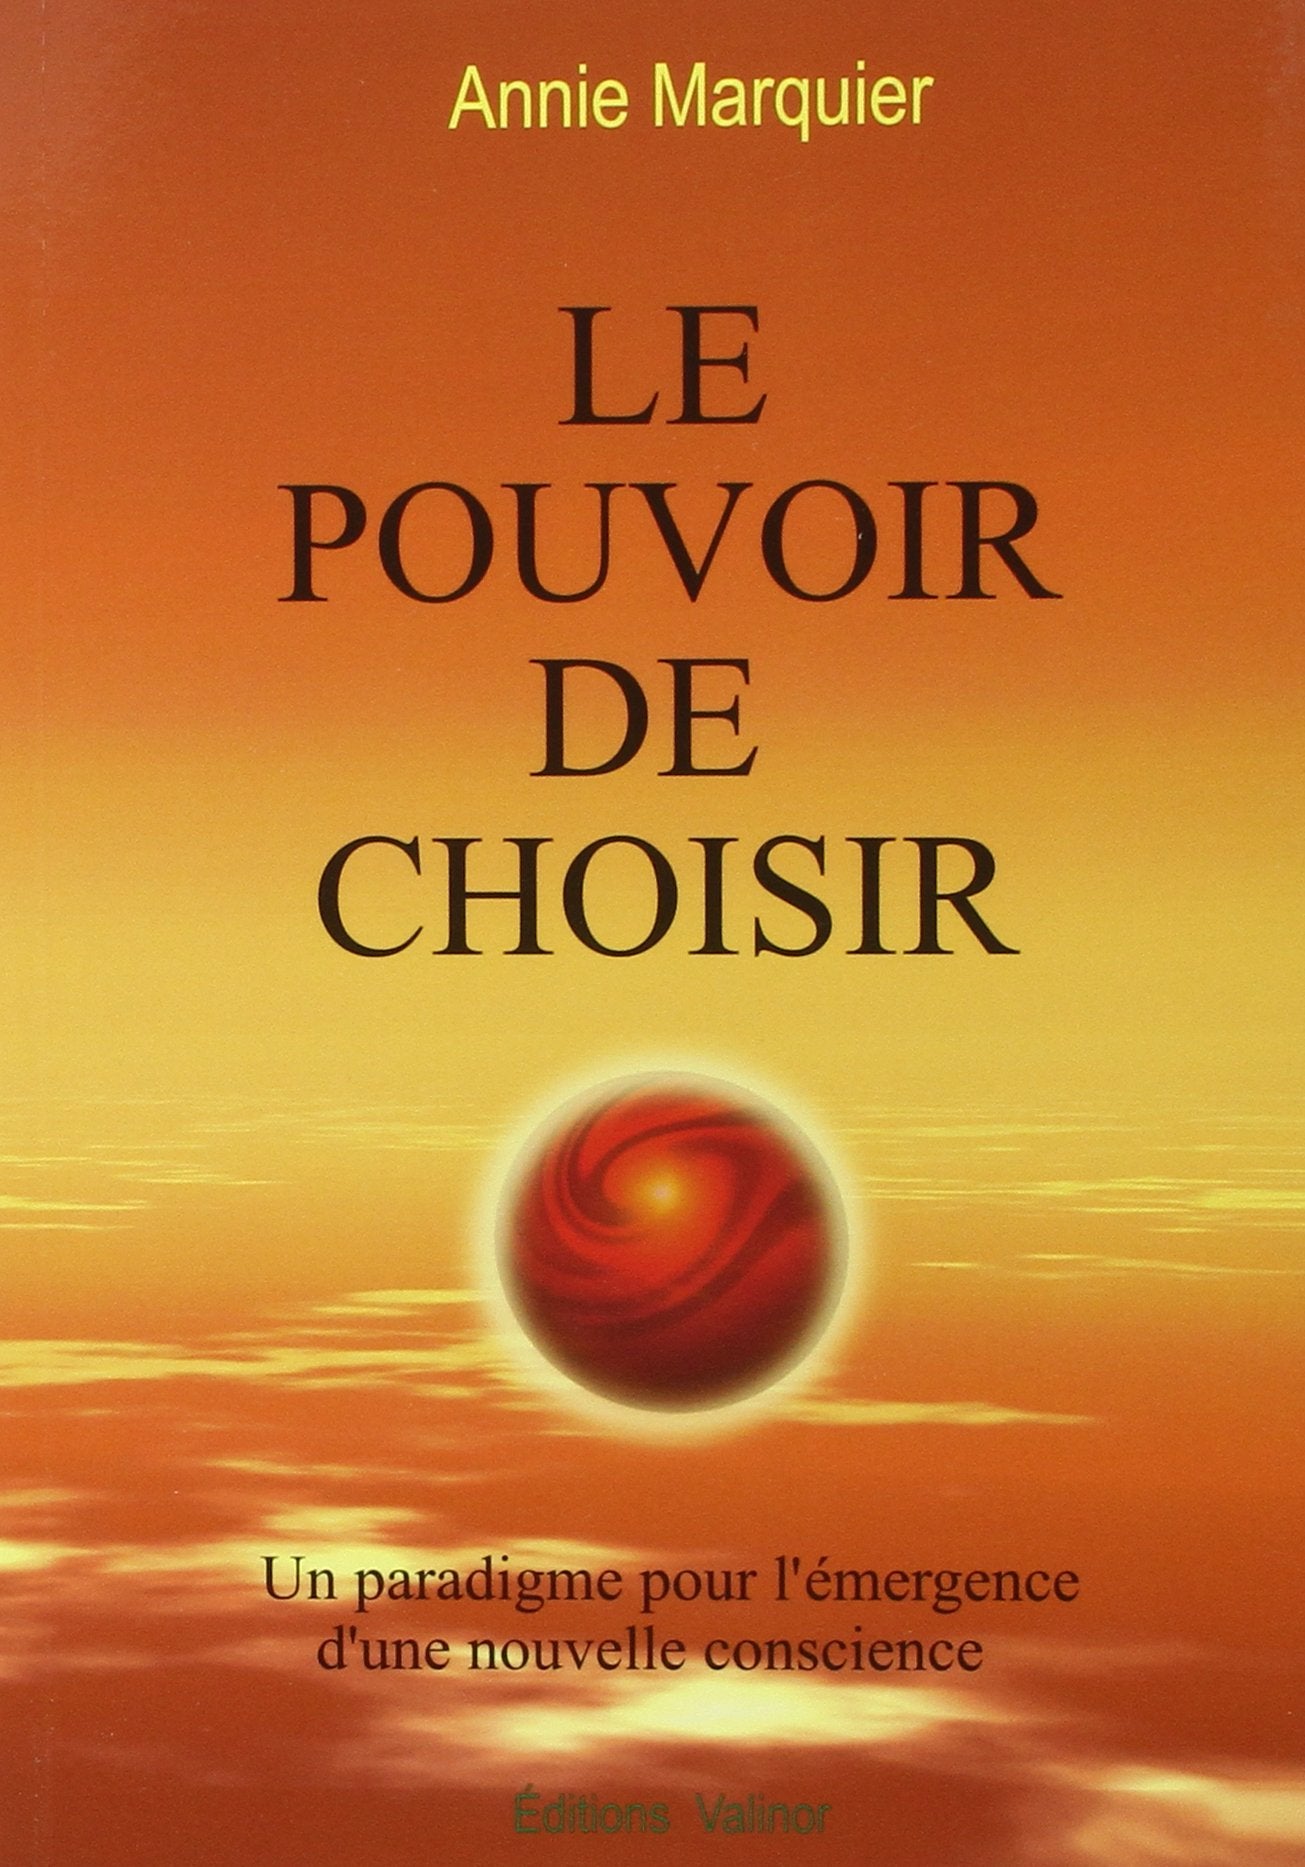 Livre ISBN 2980630179 Le pouvoir de choisir : un paradigme pour l'émergence d'une nouvelle conscience (Annie Marquier)